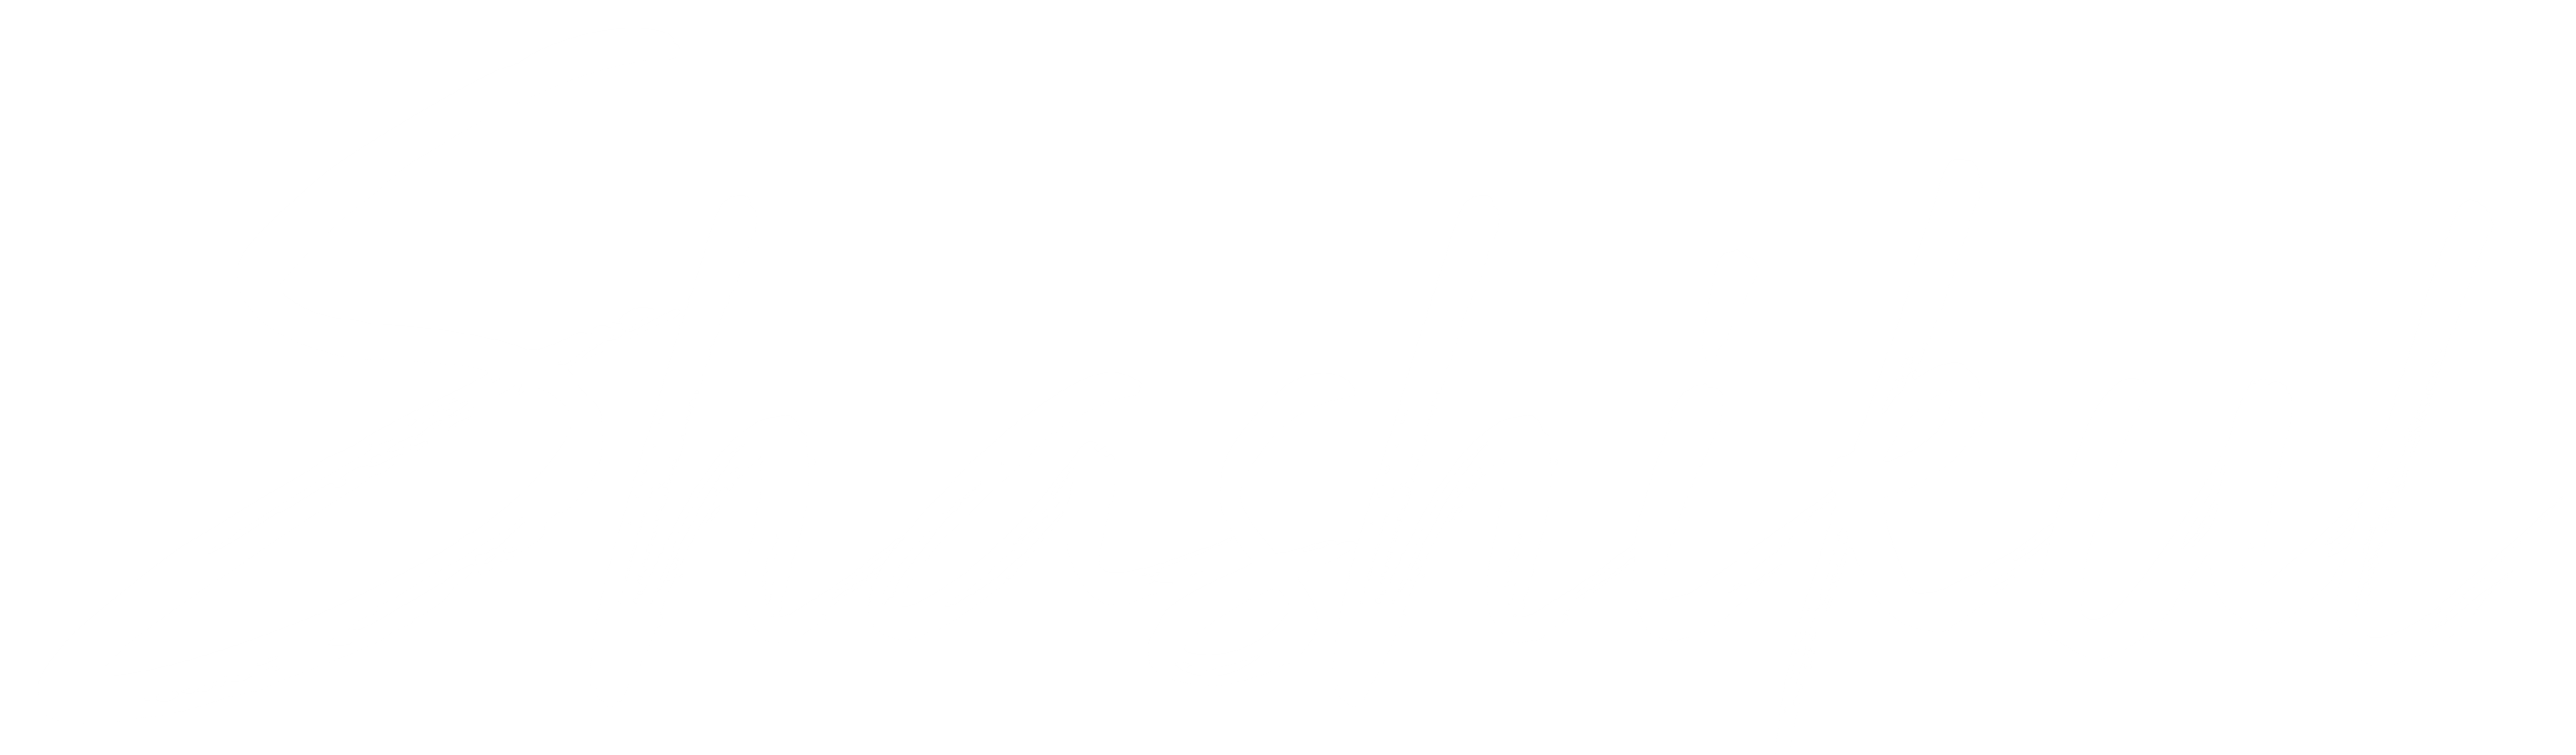 Shashikul Logo